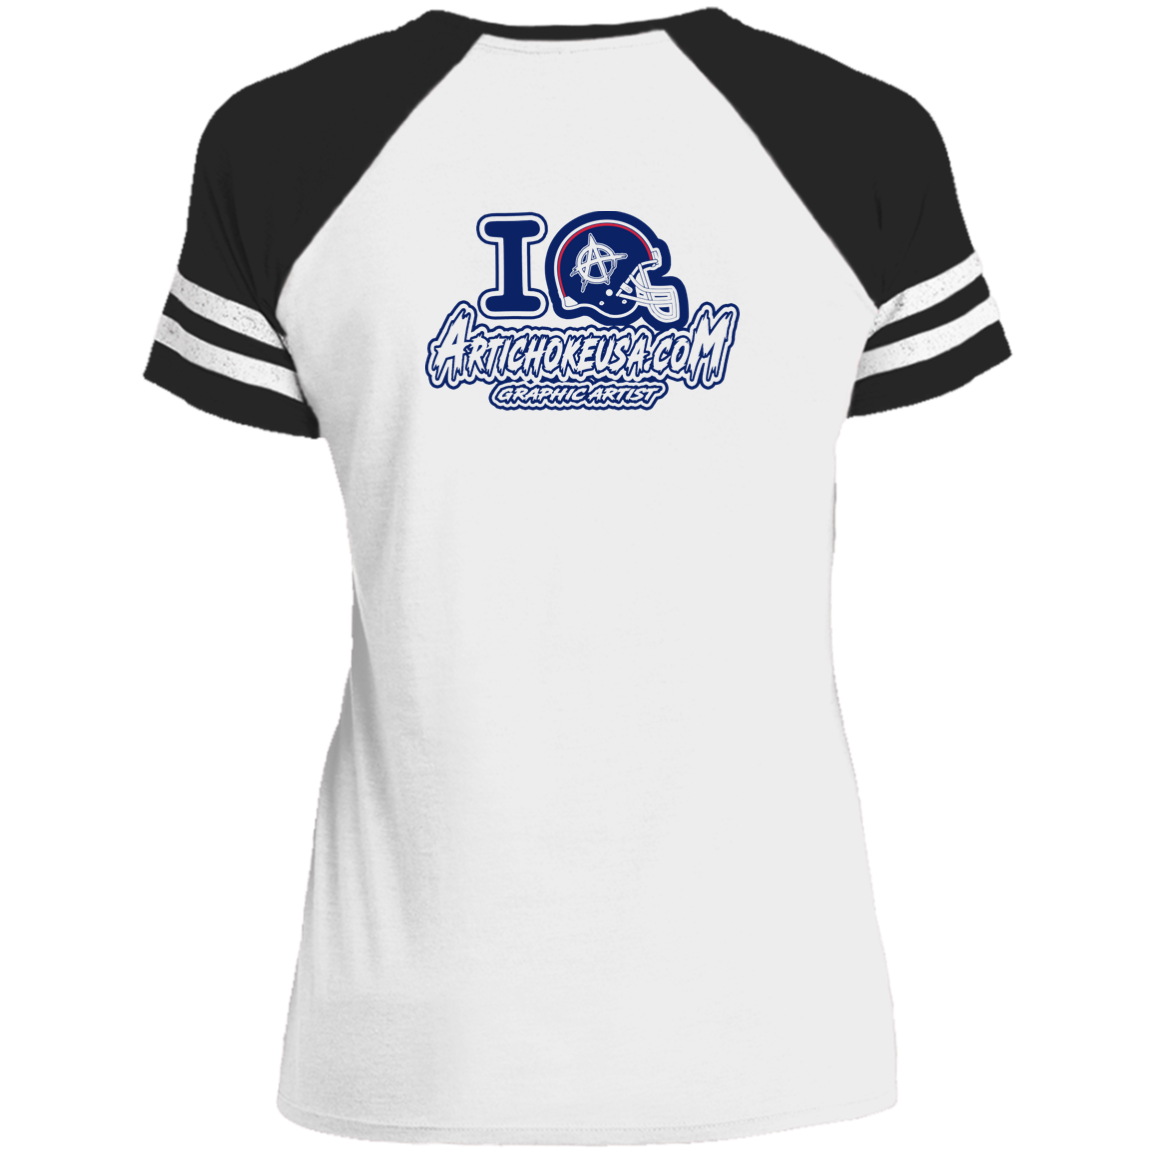 ArtichokeUSA Custom Design. New England Deflatriots. New England Patriots Parody. Ladies' Game V-Neck T-Shirt